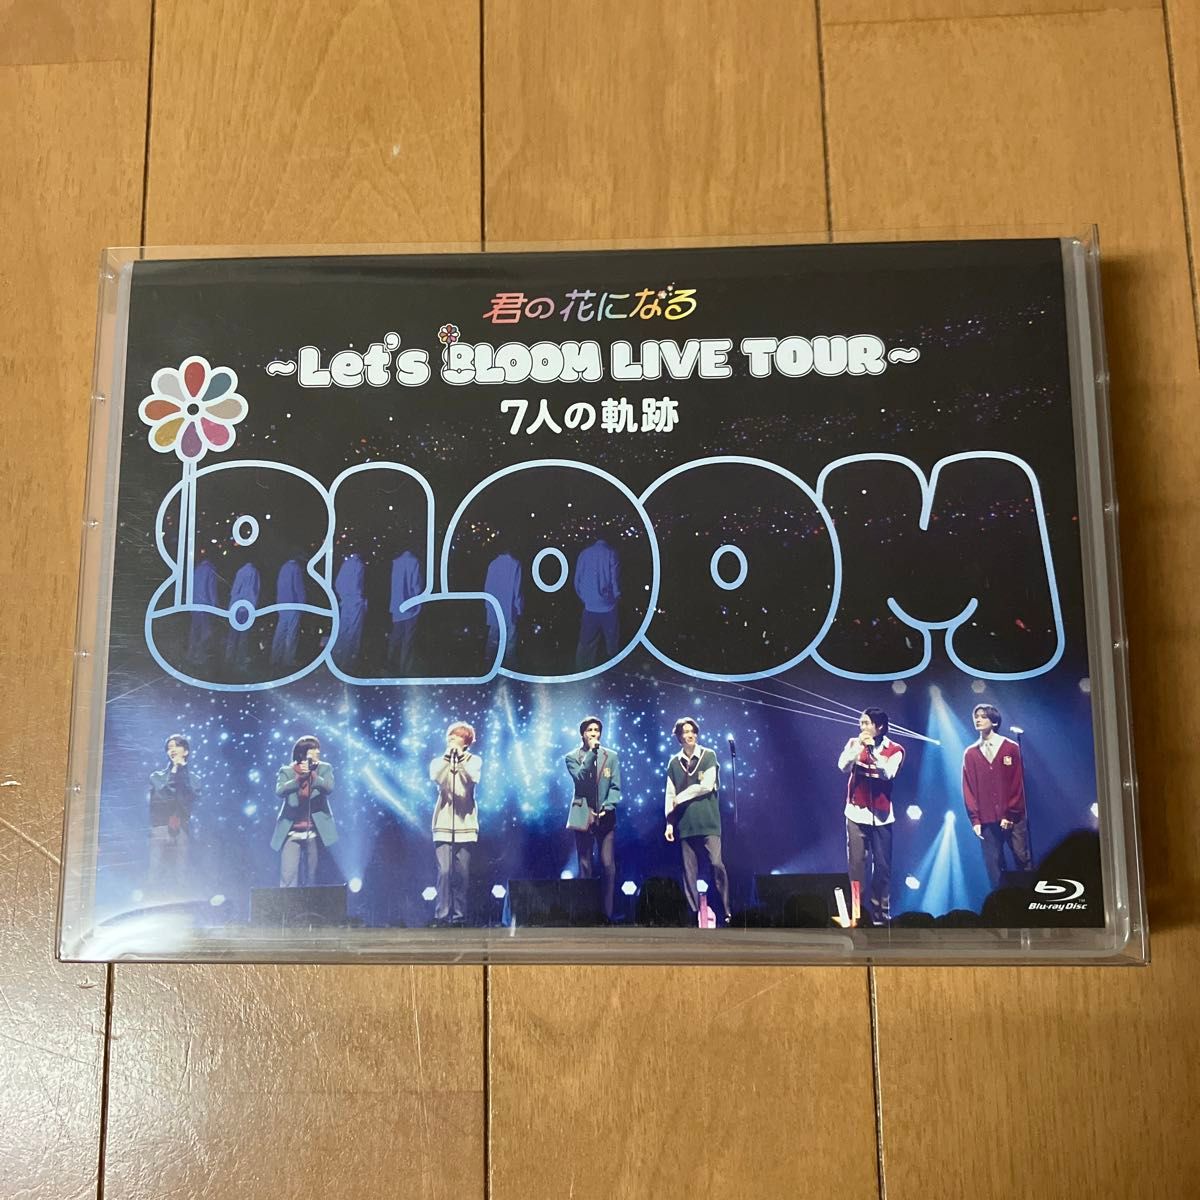 君の花になる～Let's 8LOOM LIVE TOUR～7人の奇跡/Blu-ray 